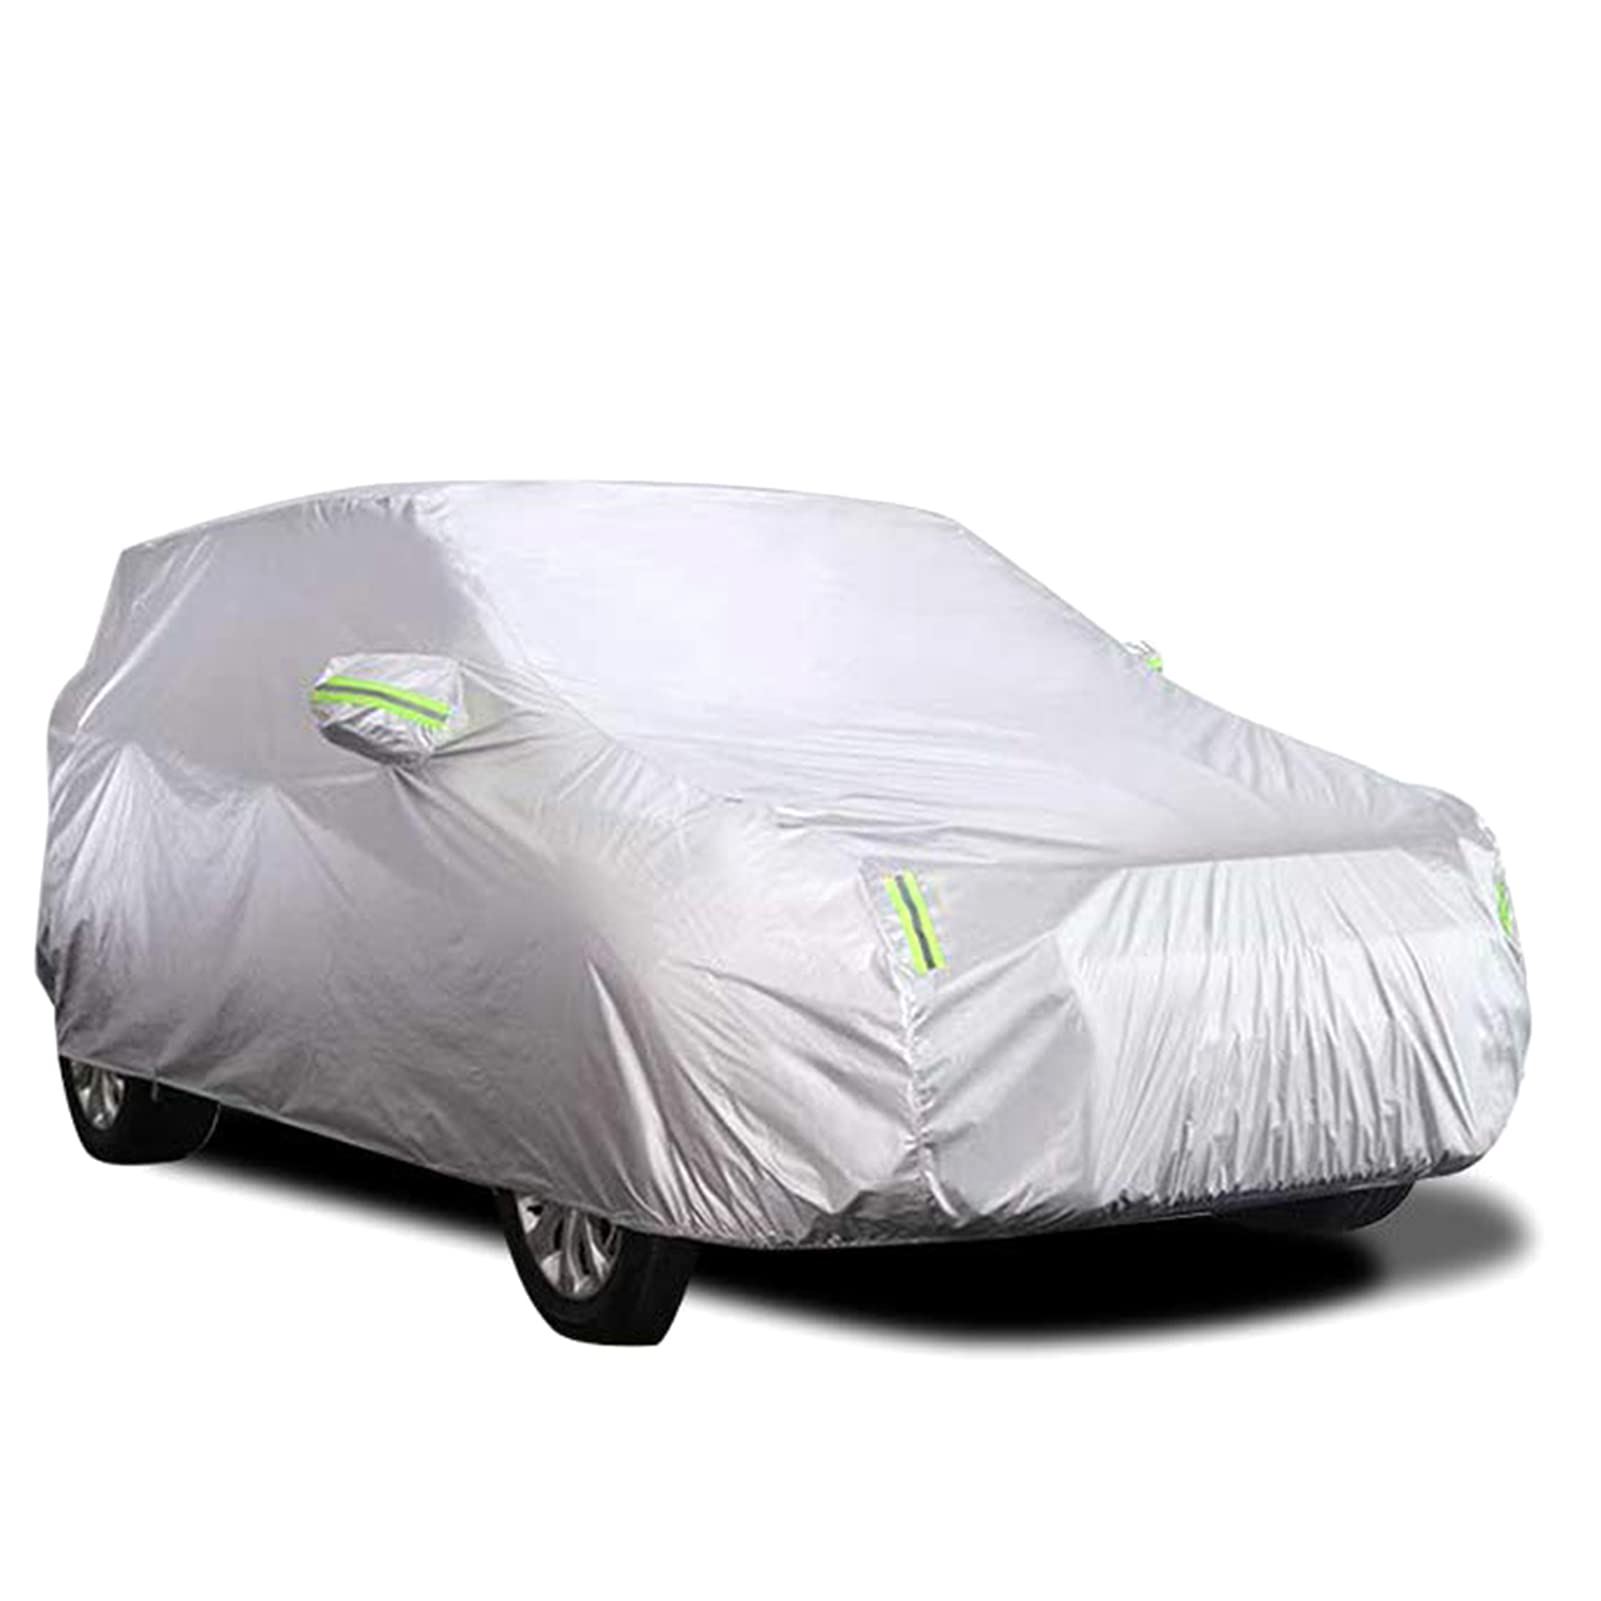 Shkalacar Autoabdeckung für den Außenbereich, Abdeckung für Autos, atmungsaktiv, UV-beständig, staubdicht, mit fester Schnalle, reflektierender Streifen (Silber, 4,5 x 1,75 x 1,5 m) von Shkalacar